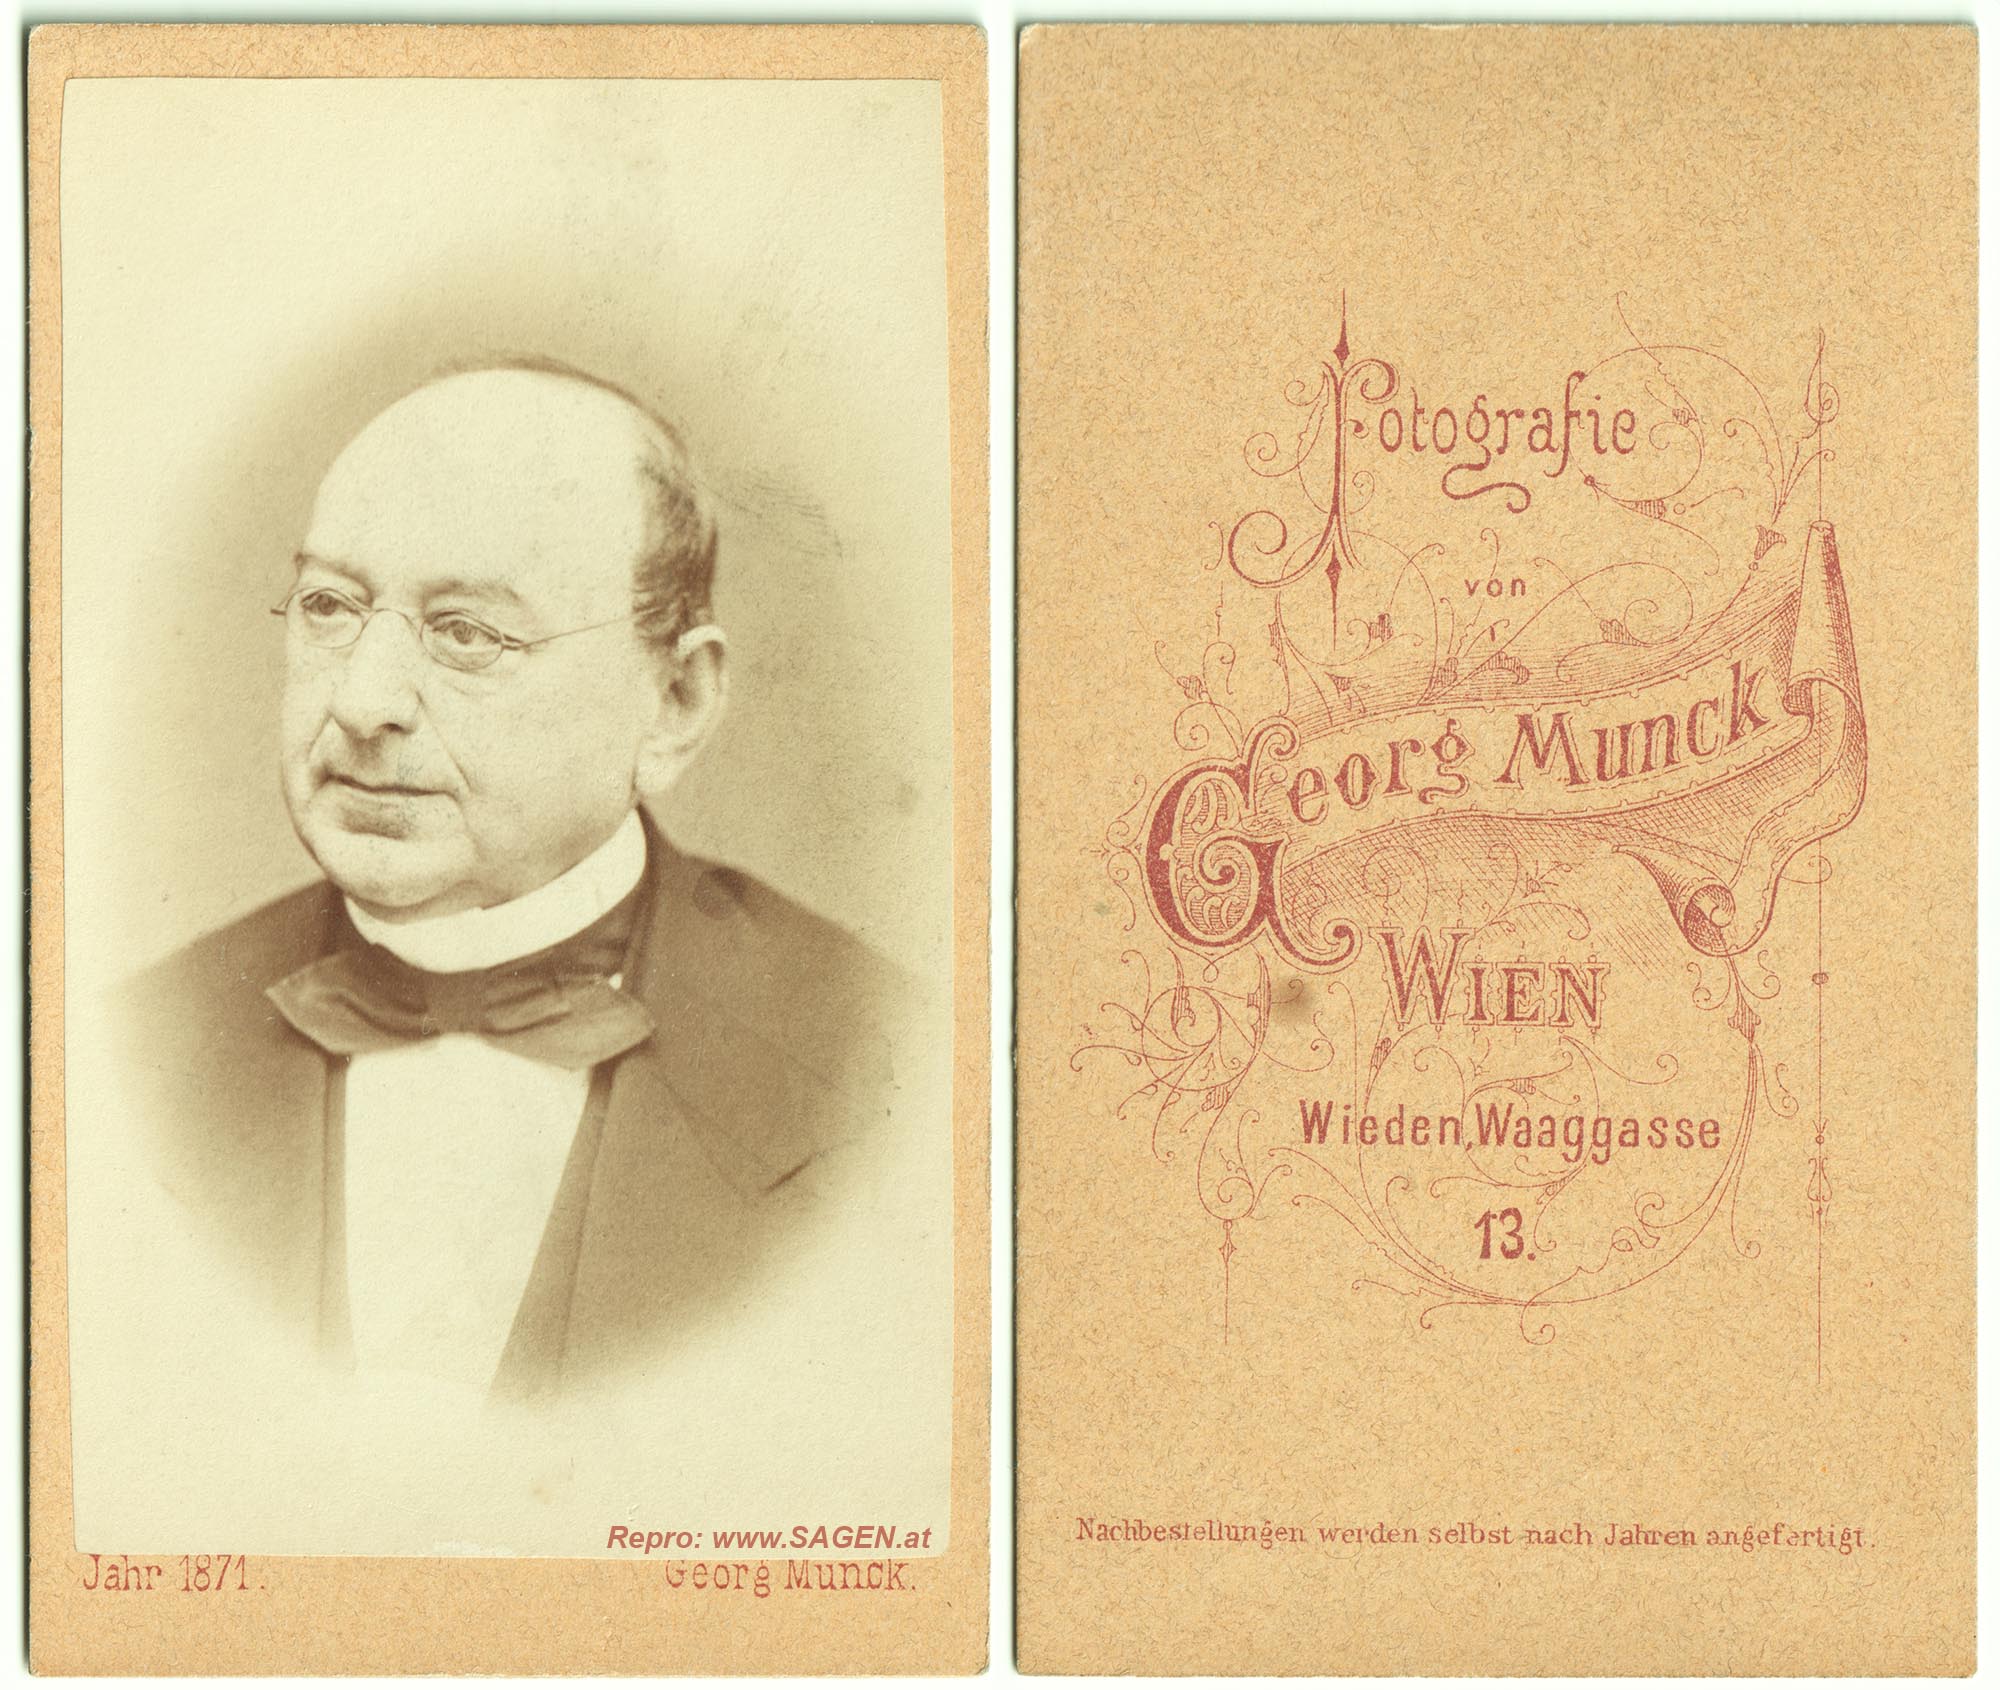 CdV Herrenporträt im Atelier Georg Munck, Wien 1871